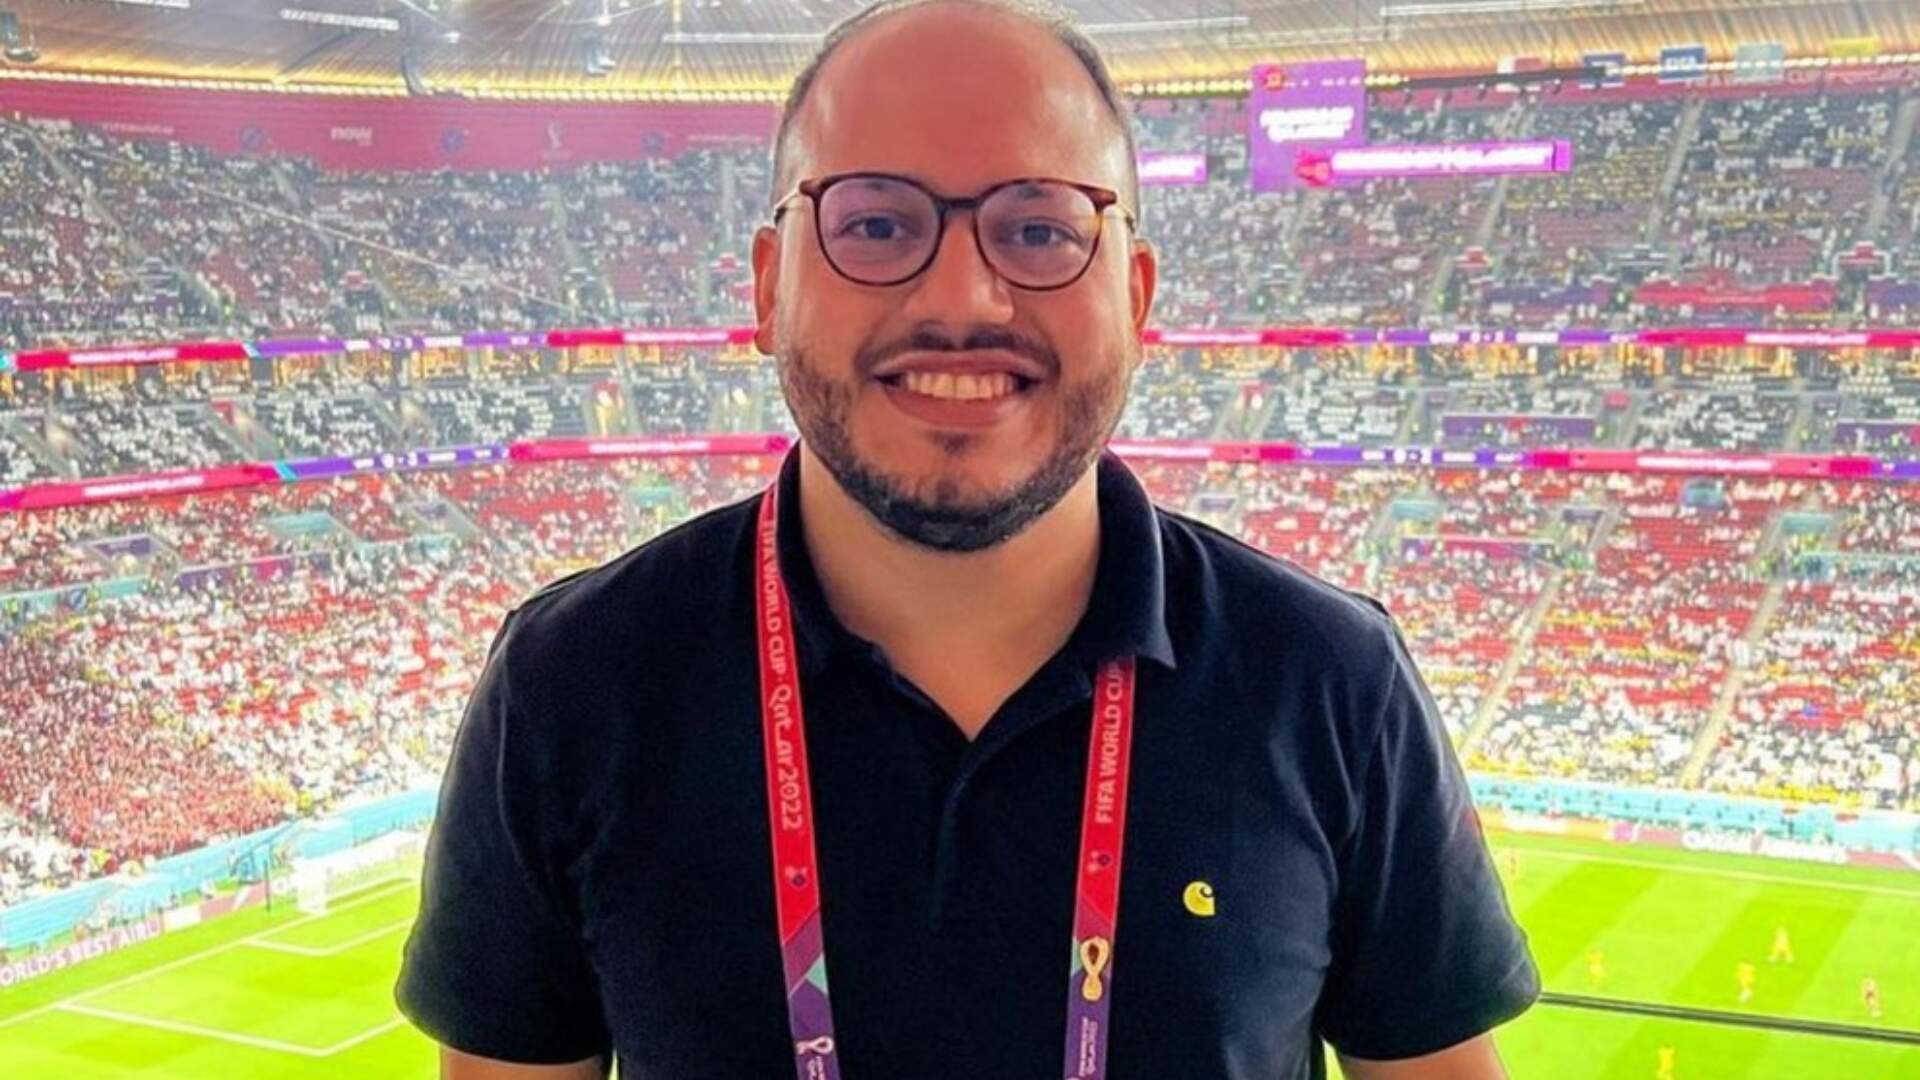 Copa do Mundo: Seguraças confundem bandeira de de Pernambuco com arco-íris LGBT e agridem jornalista - Metropolitana FM